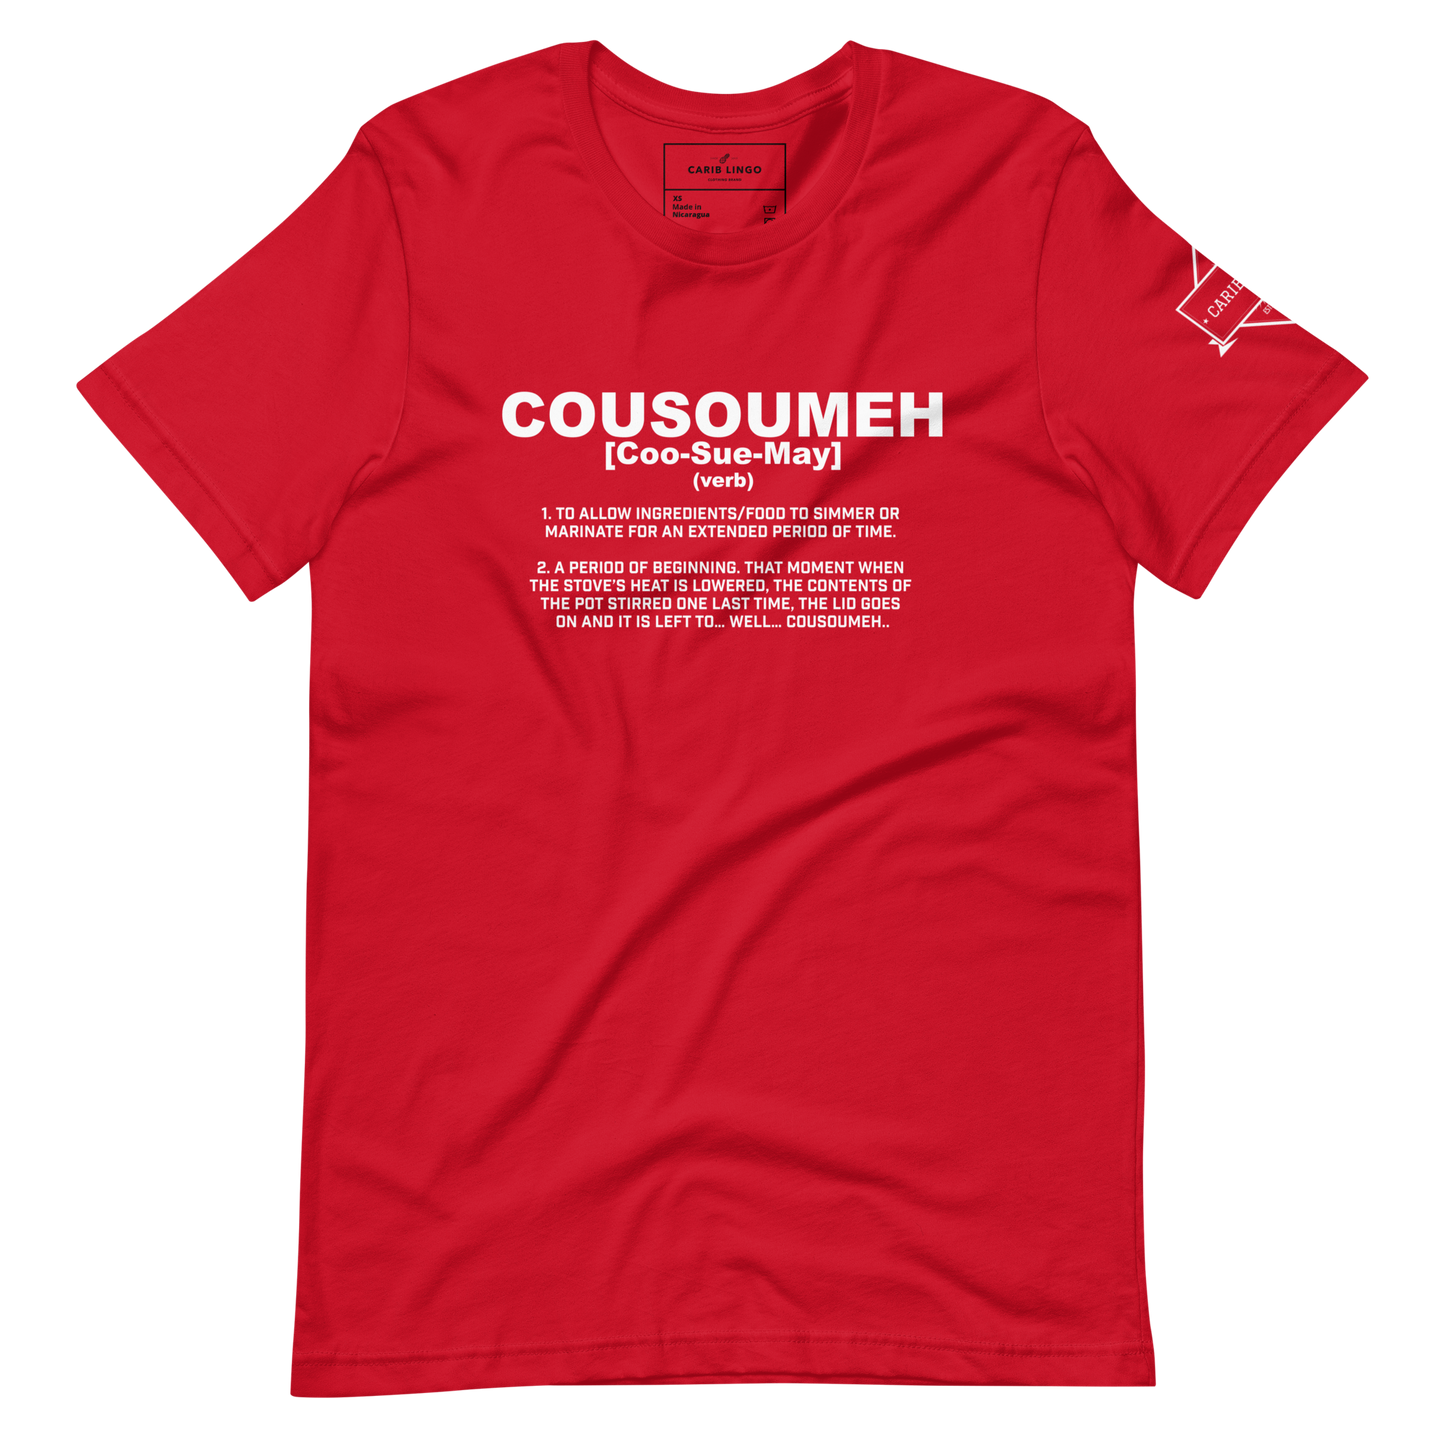 Cousoumeh t-shirt